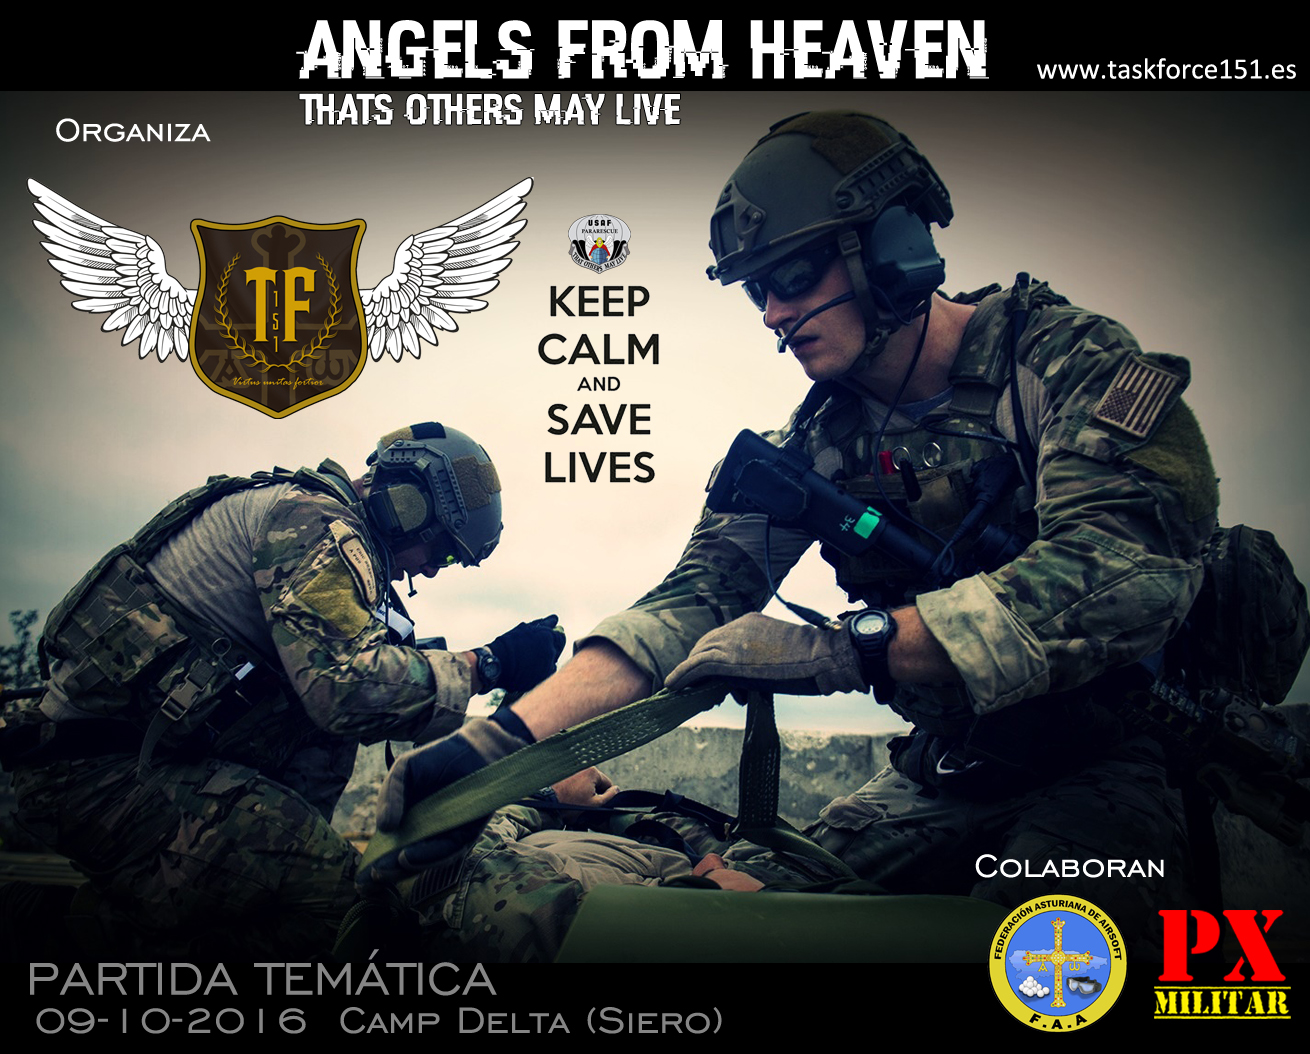 cartel-heaven-angels